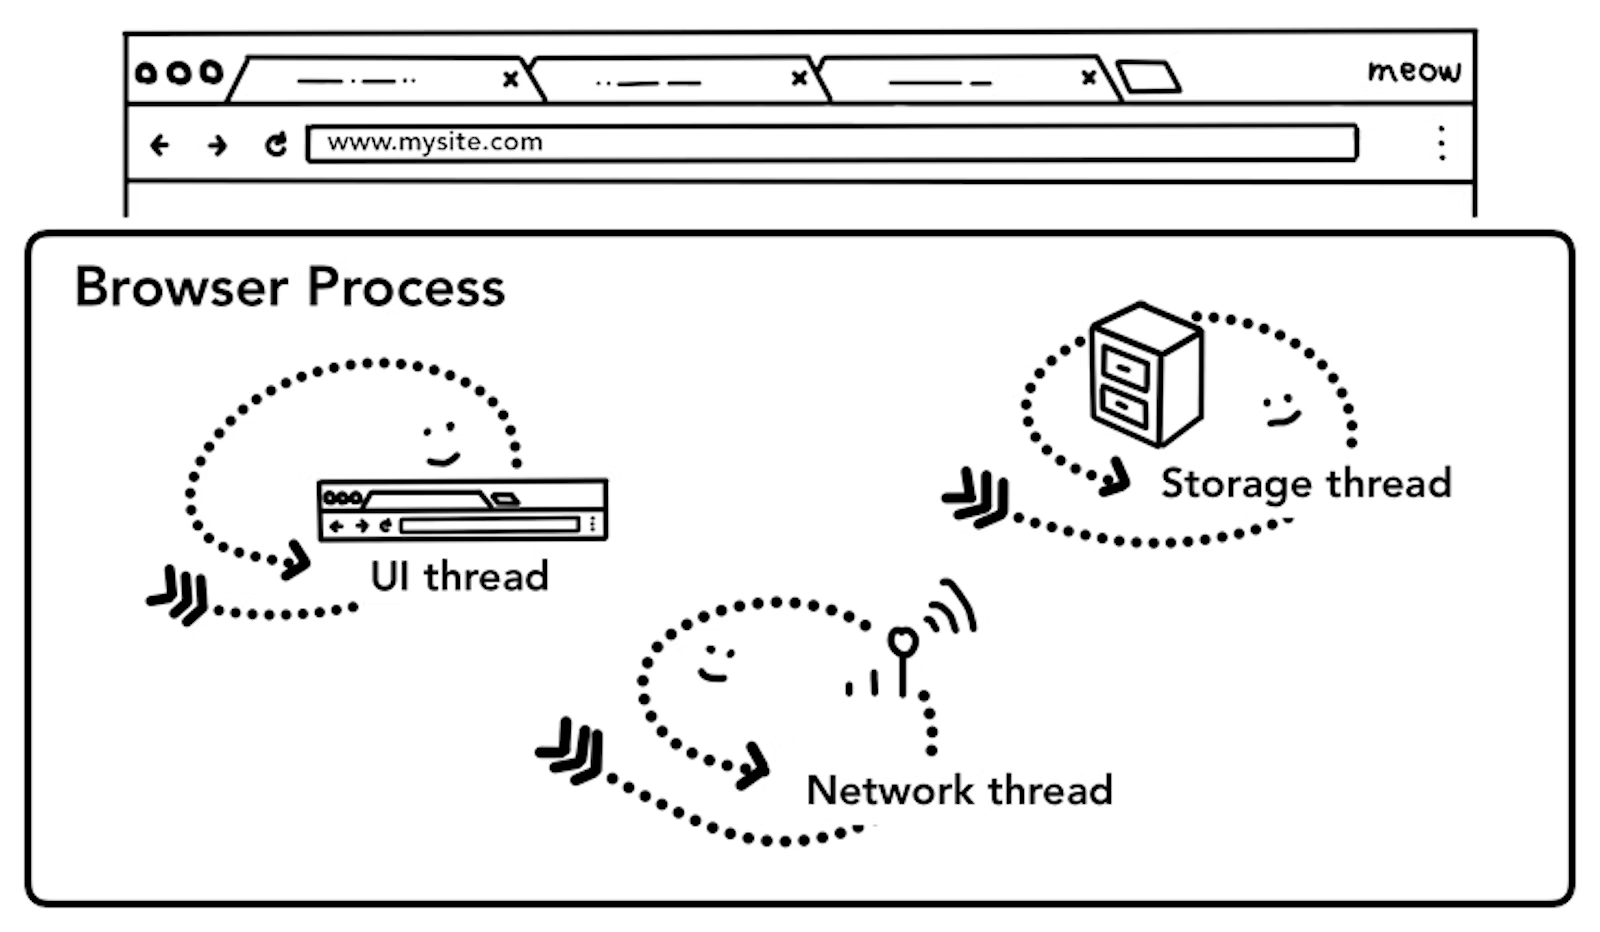 그림 1. 브라우저 UI(위), UI, 네트워크, 스토리지 쓰레드를 포함한 브라우저 프로세스(아래)